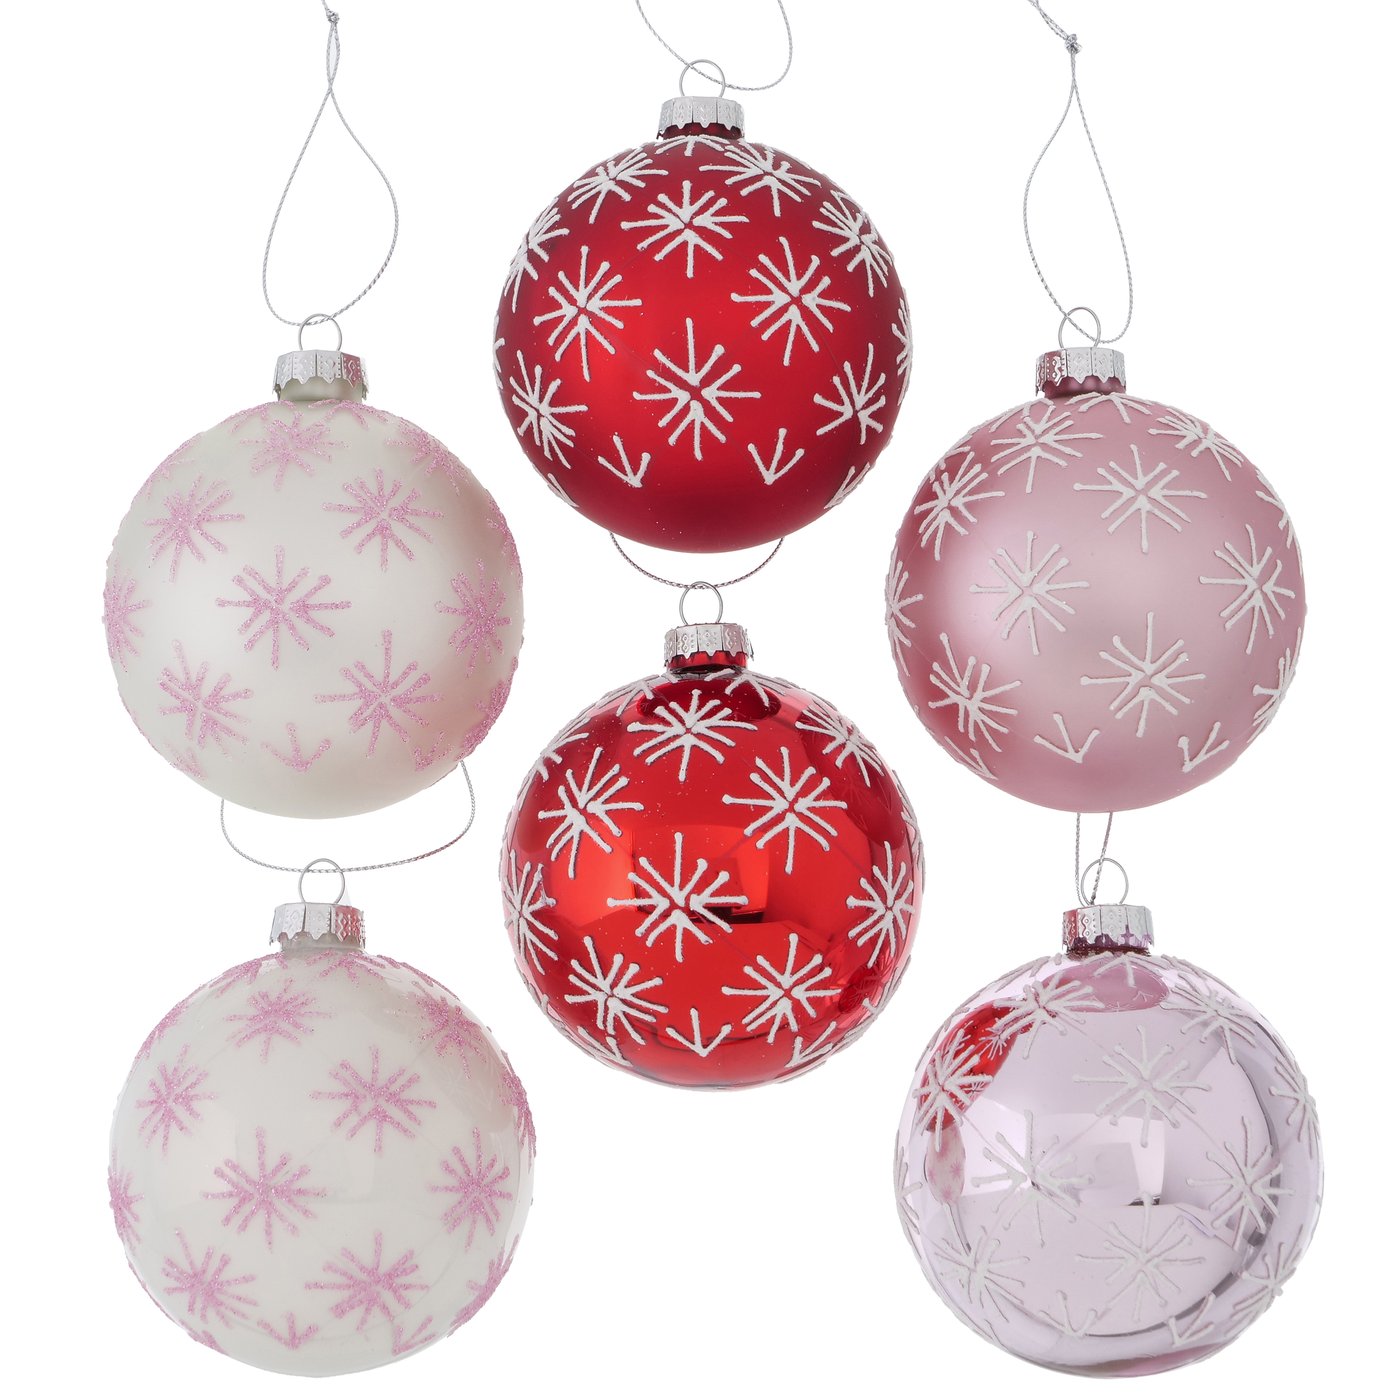 Glas Weihnachtskugel "Schneeflocke" rot rosa weiß 12er Set - D 8cm, 2012121, 4020607893962, Weihnachtsbaumkugel, Christbaumkugel